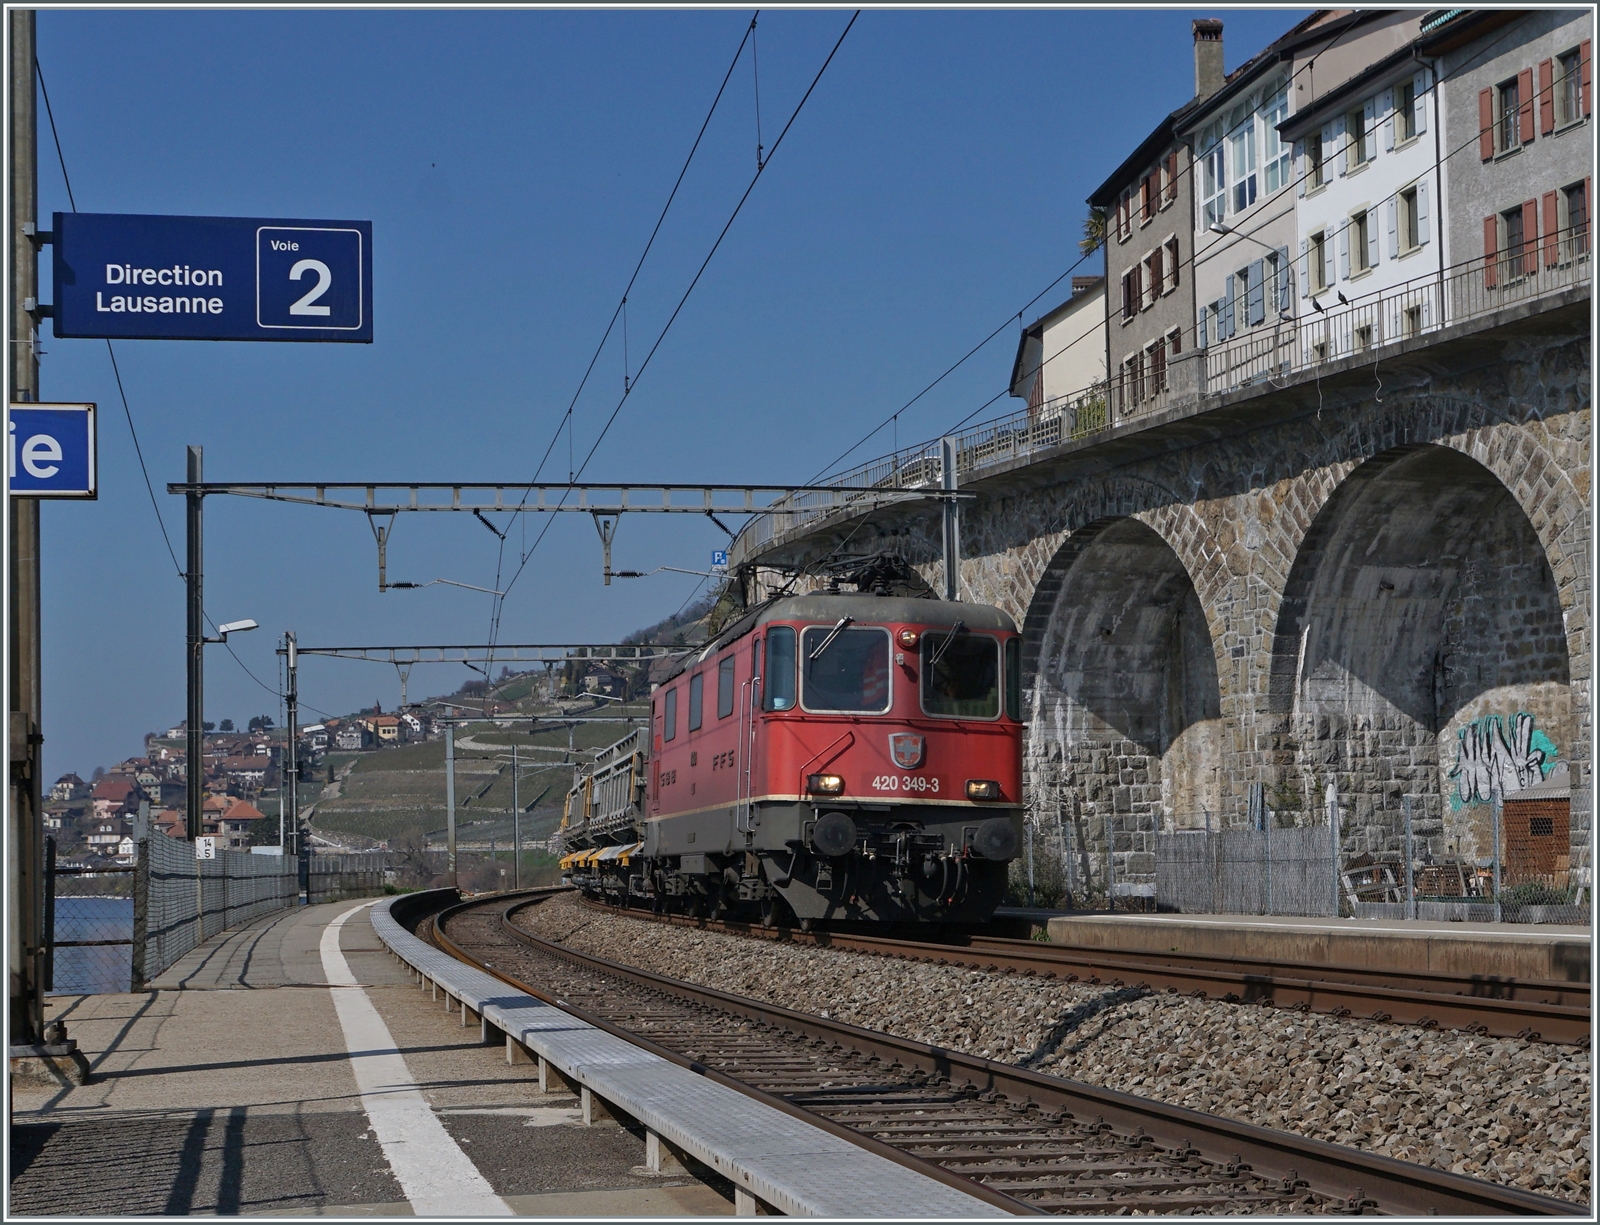 Die SBB Re 4/4 II 11349 (Re 420 349-3) ist mit einem Güterzug in Rivazs unterwegs. 

25. März 2022 